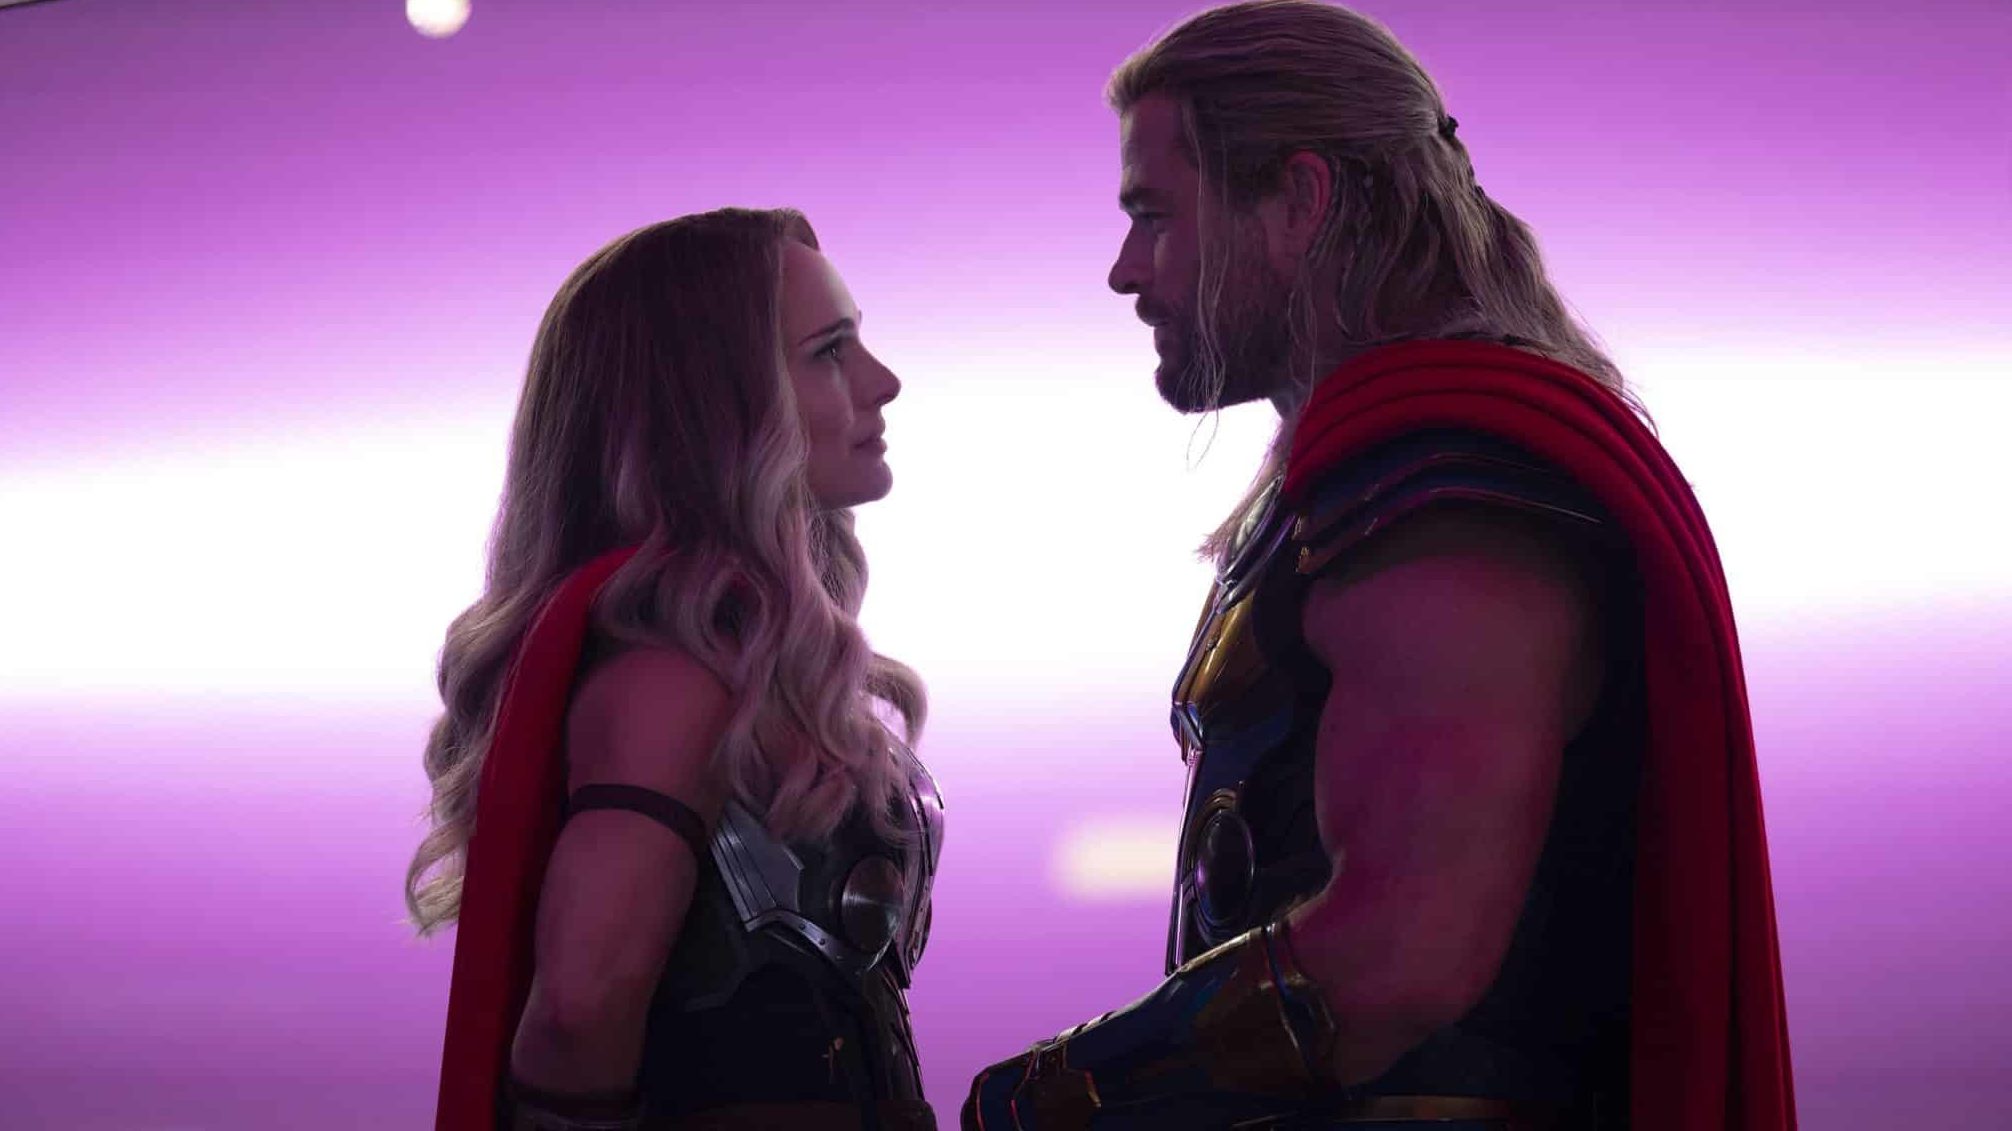 Thor: Amor e Trovão - Análise